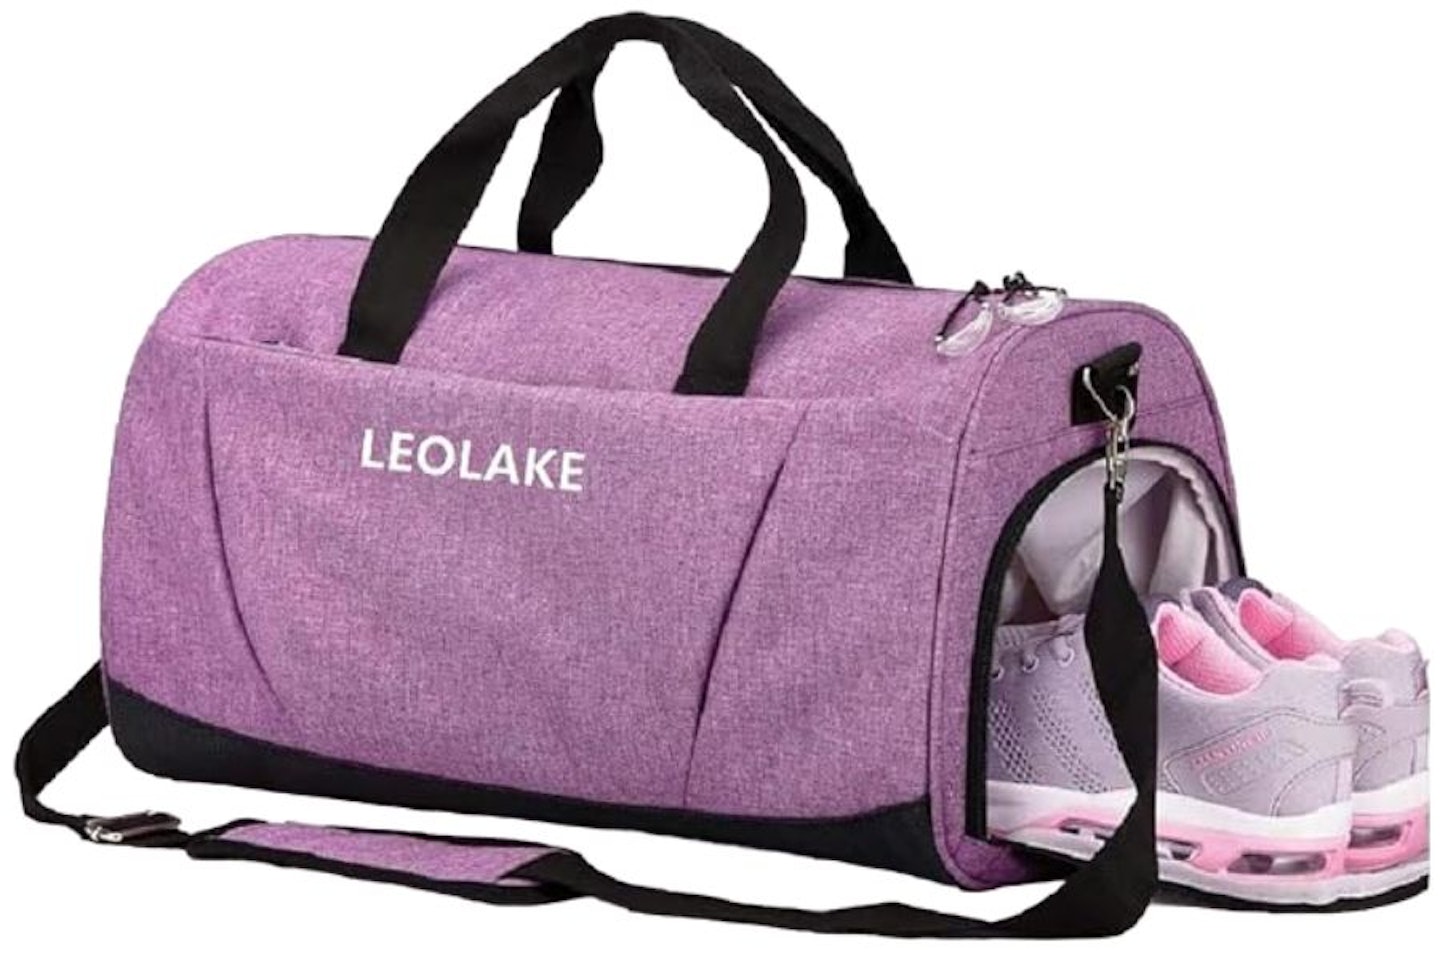 Leolake Sports Gym Bag 